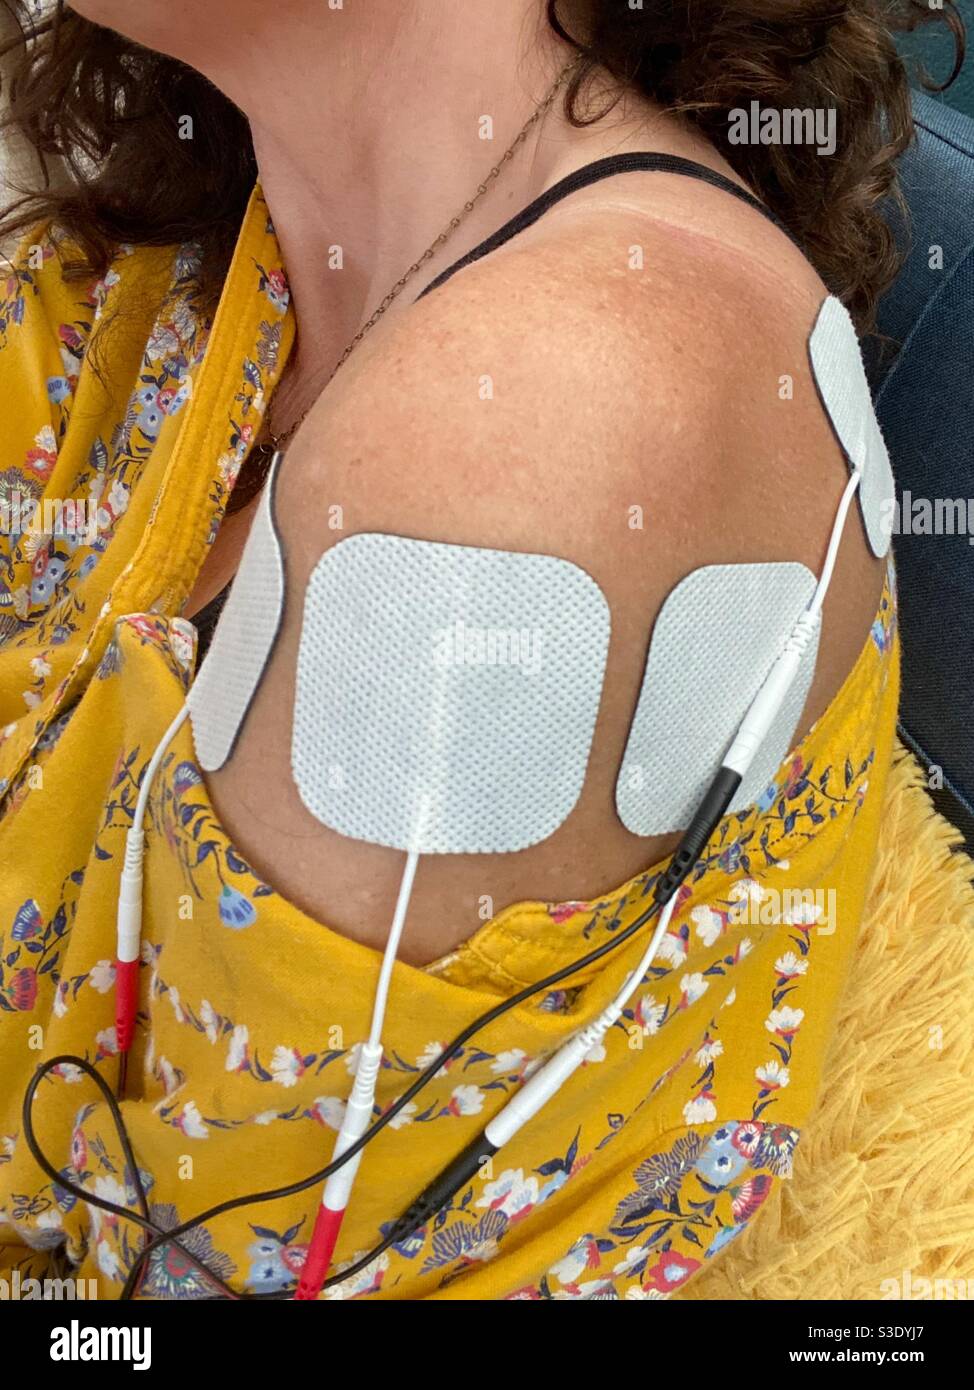 Una donna che utilizza la stimolazione transcutanea del nervo elettrico su una ferita della spalla. Foto Stock